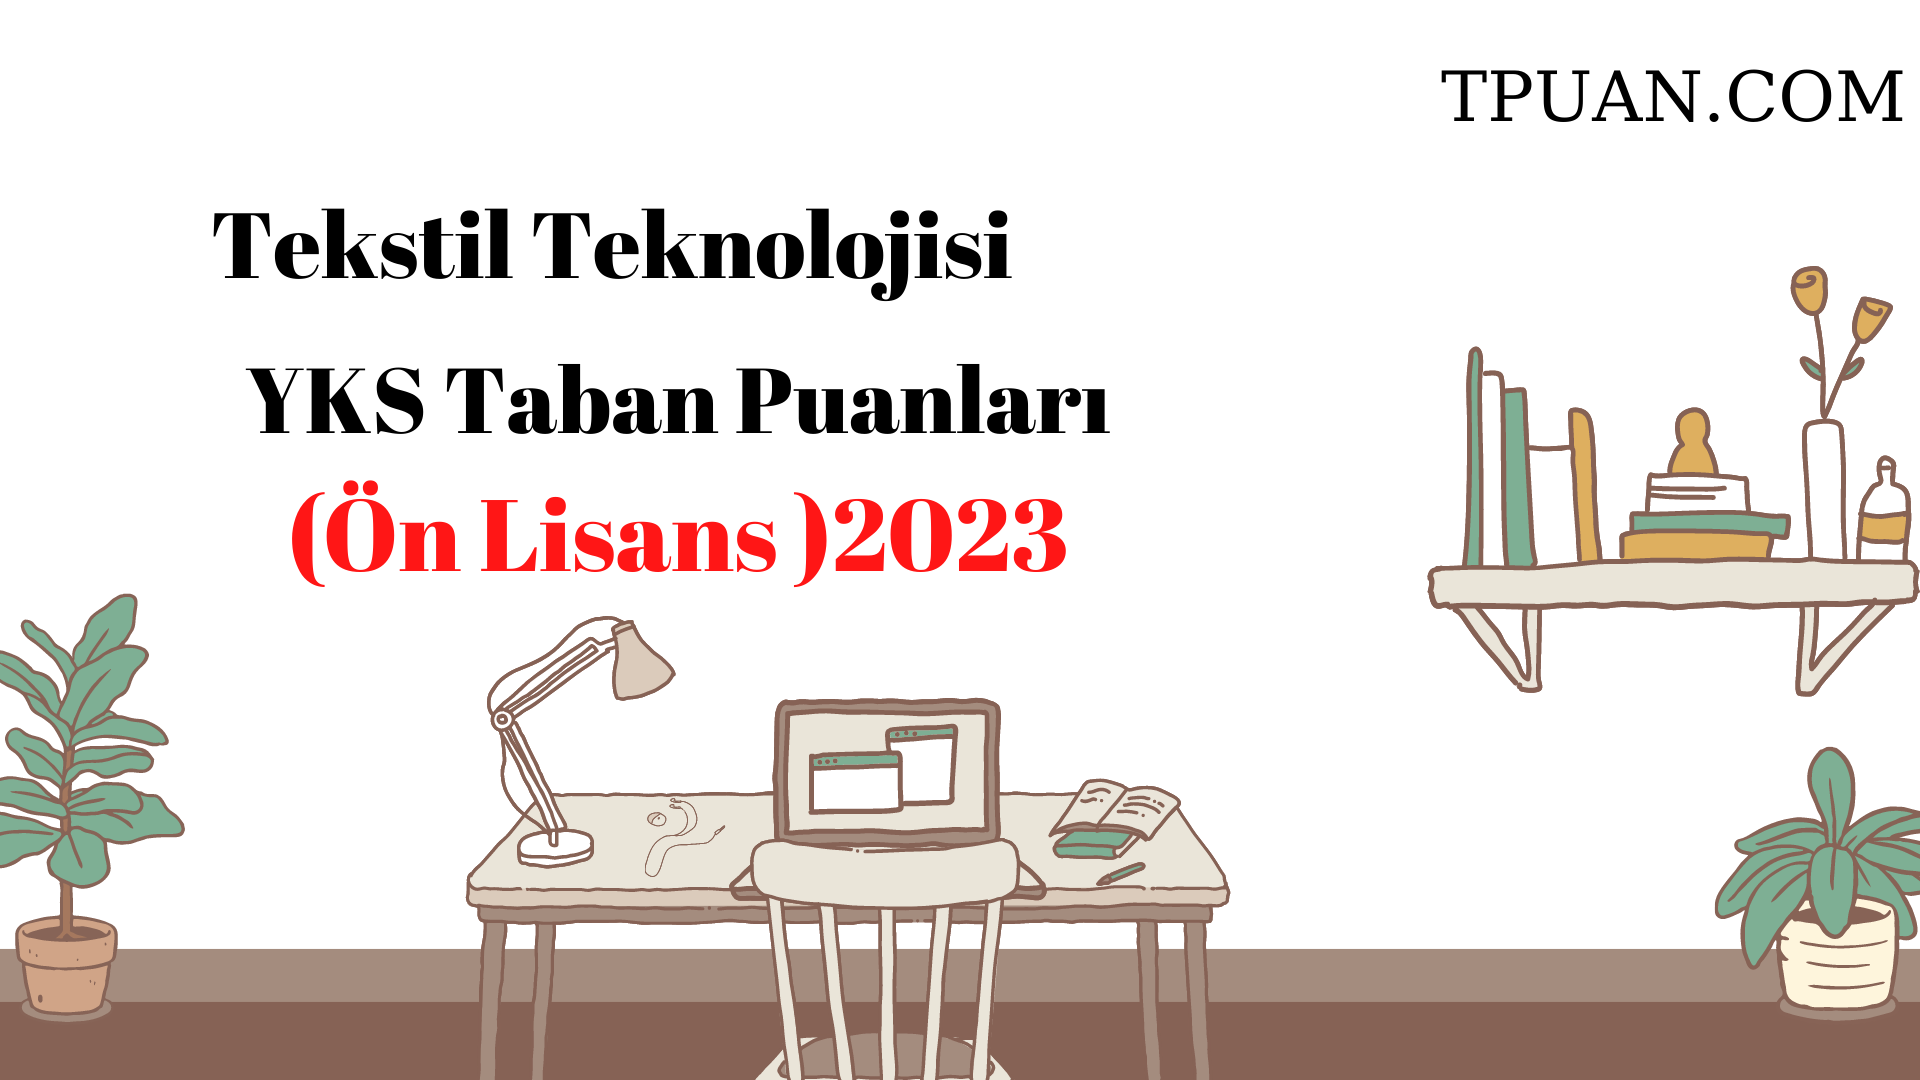  Tekstil Teknolojisi Bölümü YKS Taban Puanları (2 Yıllık) 2023